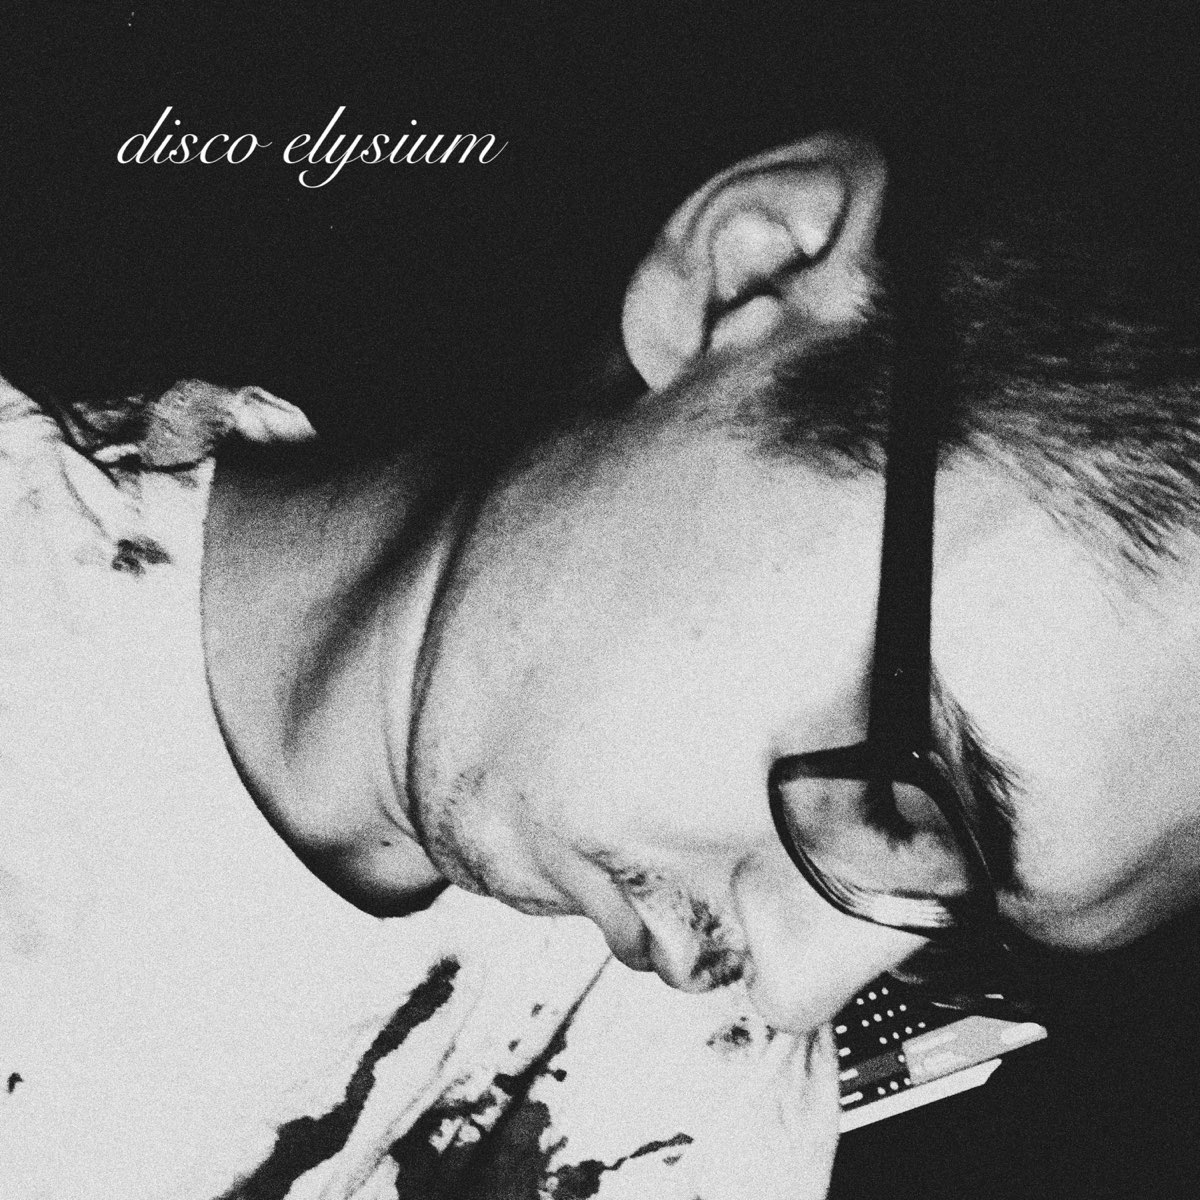 ‎Disco Elysium - Single by Telamonia on Apple Music